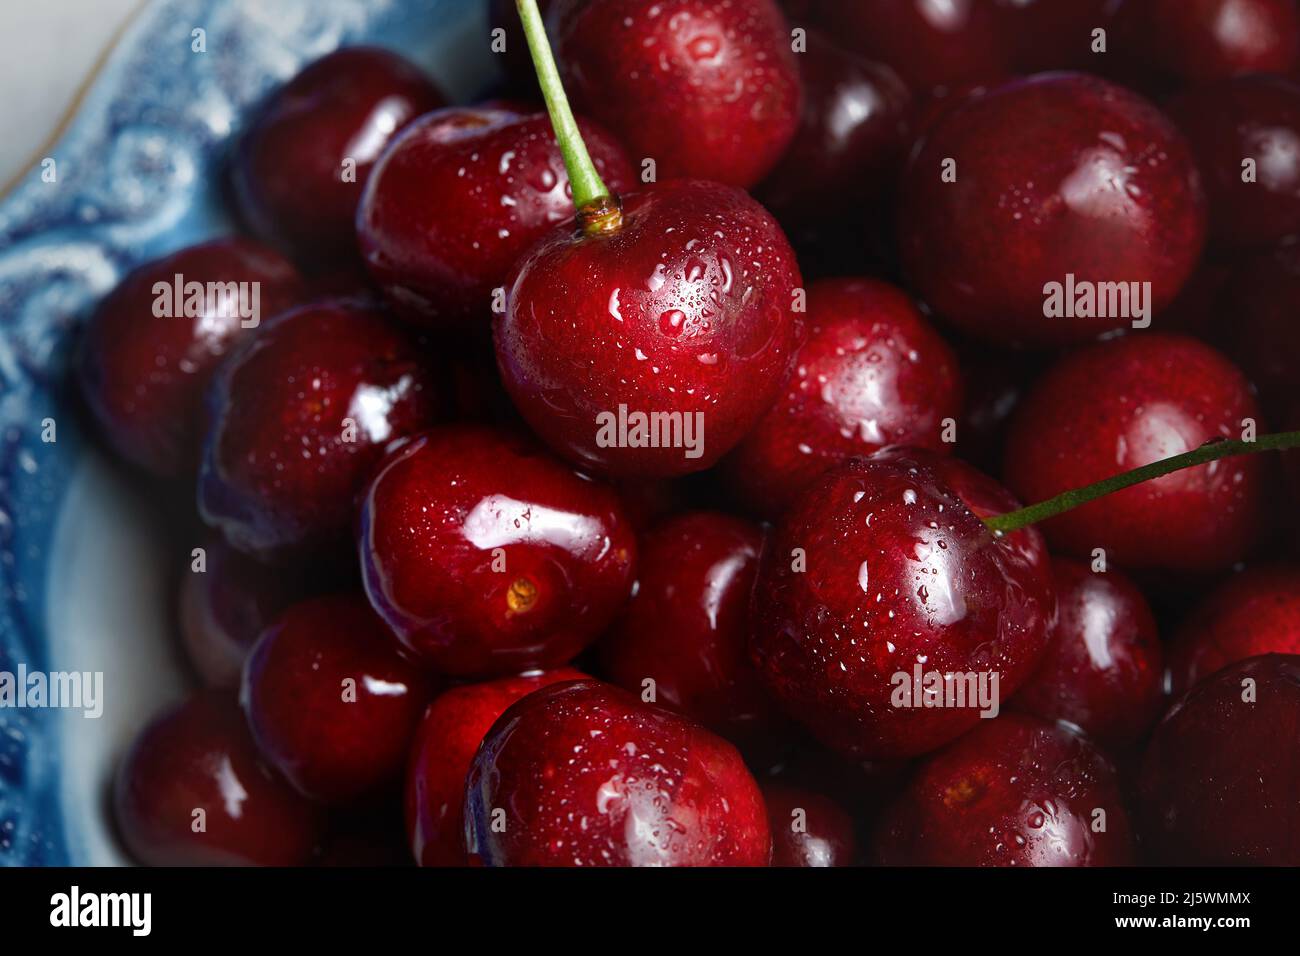 Close up of pile of ripe cherries. fresh red cherries. Ripe cherries background Stock Photo